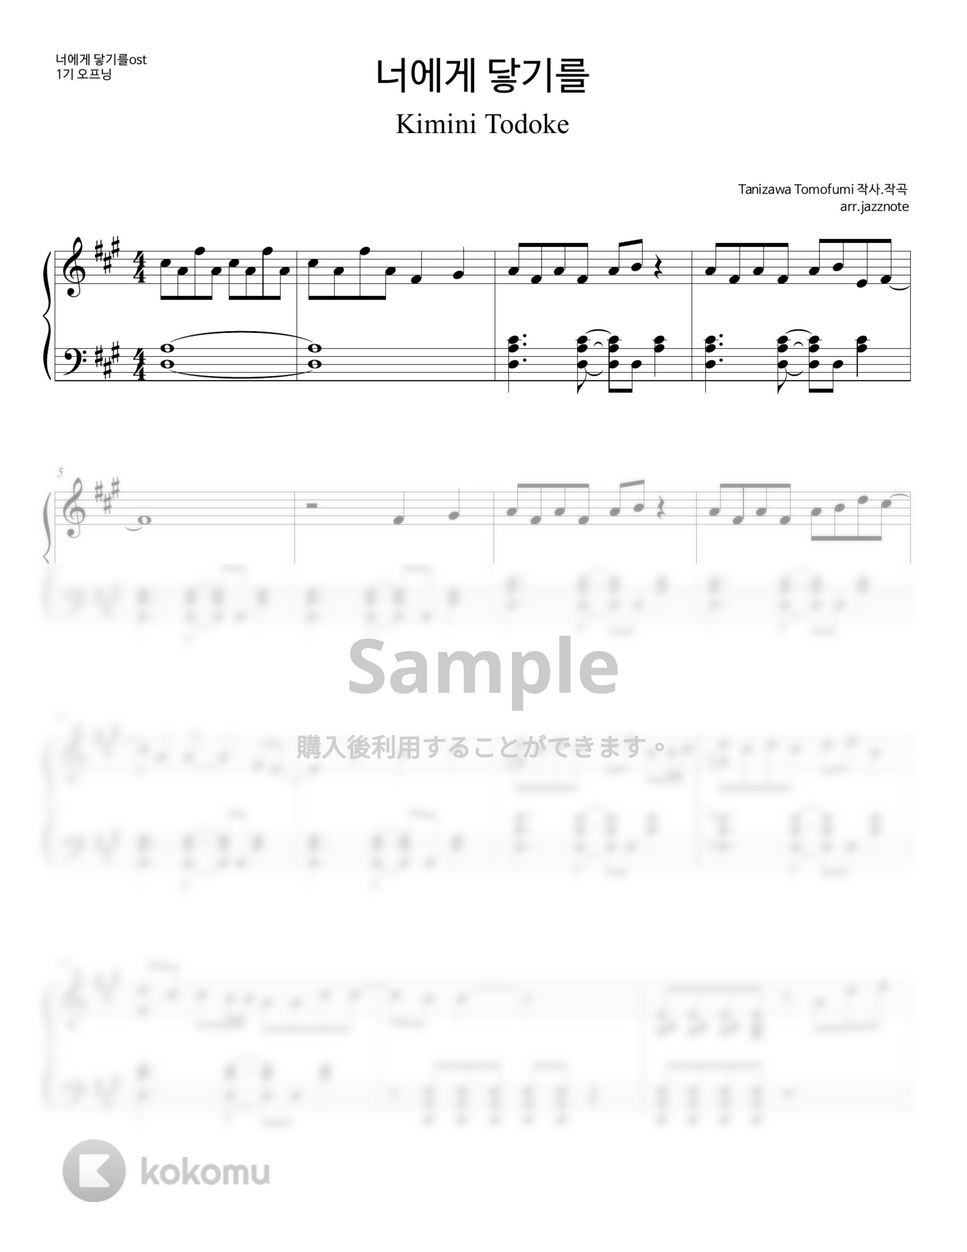 タニザワトモフミ - きみにとどけ (君に届け OST) by JAZZNOTE